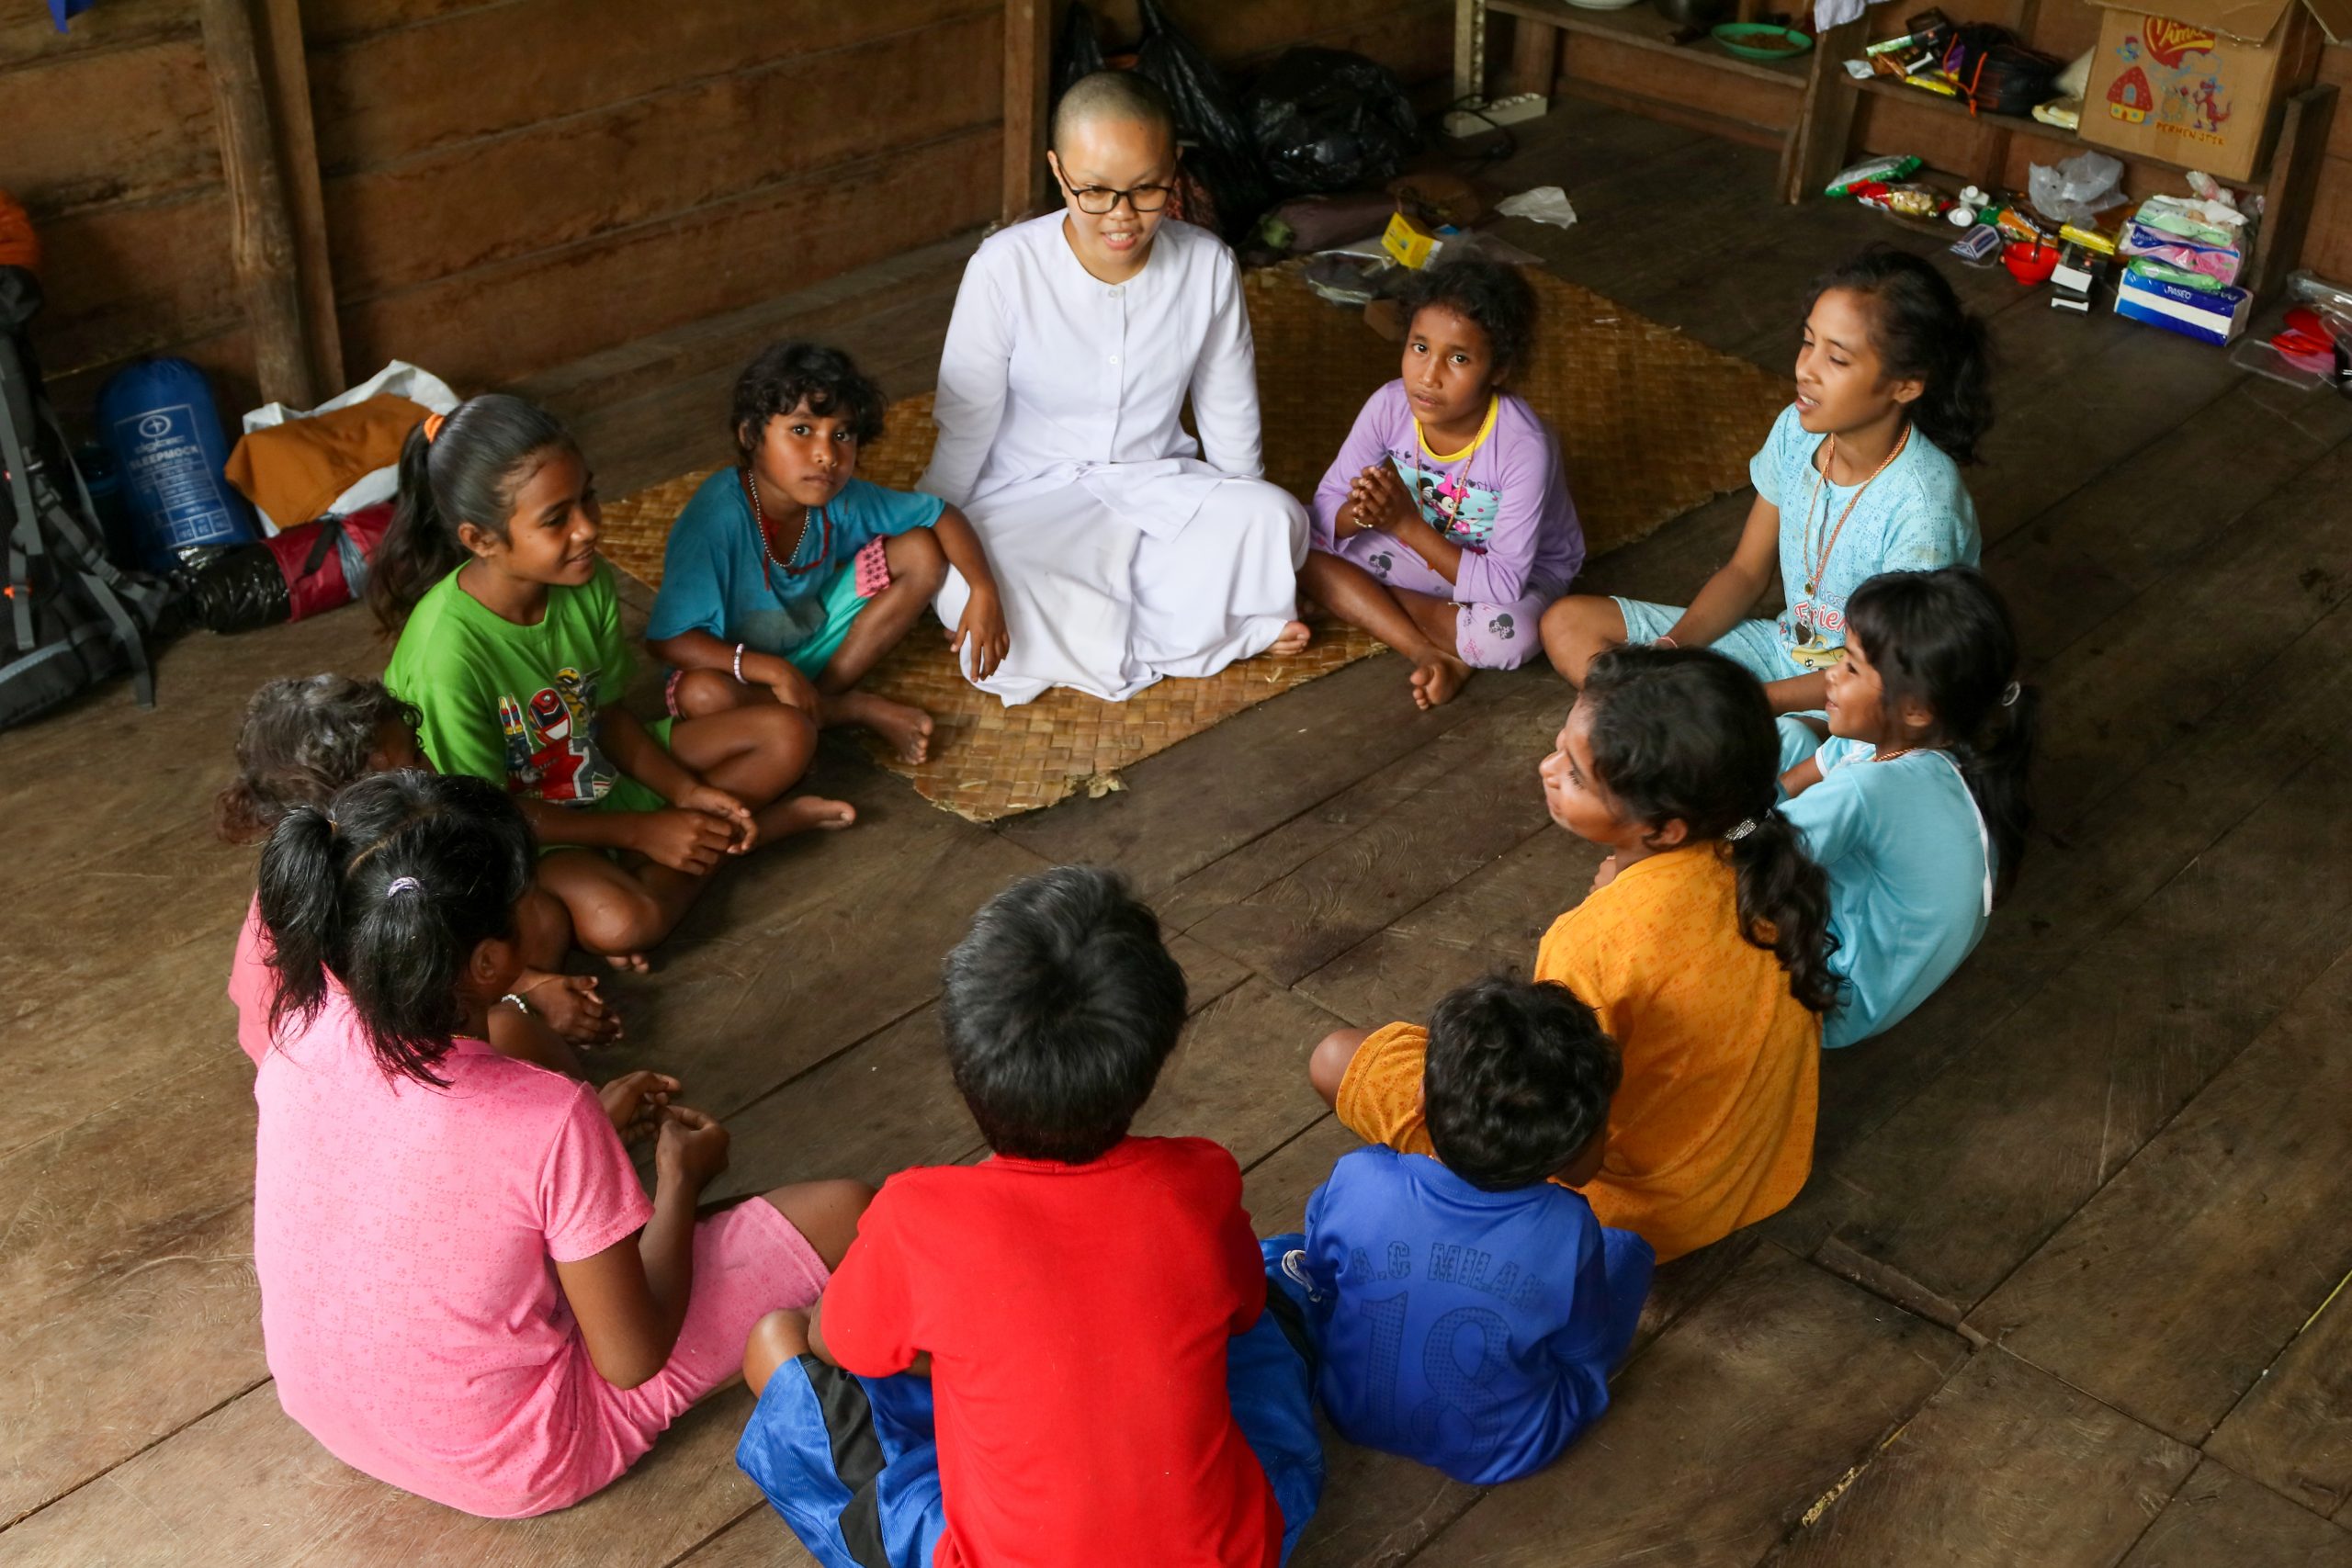 Sejumlah anak-anak Buddhis di pedalaman Pulau Seram, Maluku sedang belajar dengan Bhikkhu.